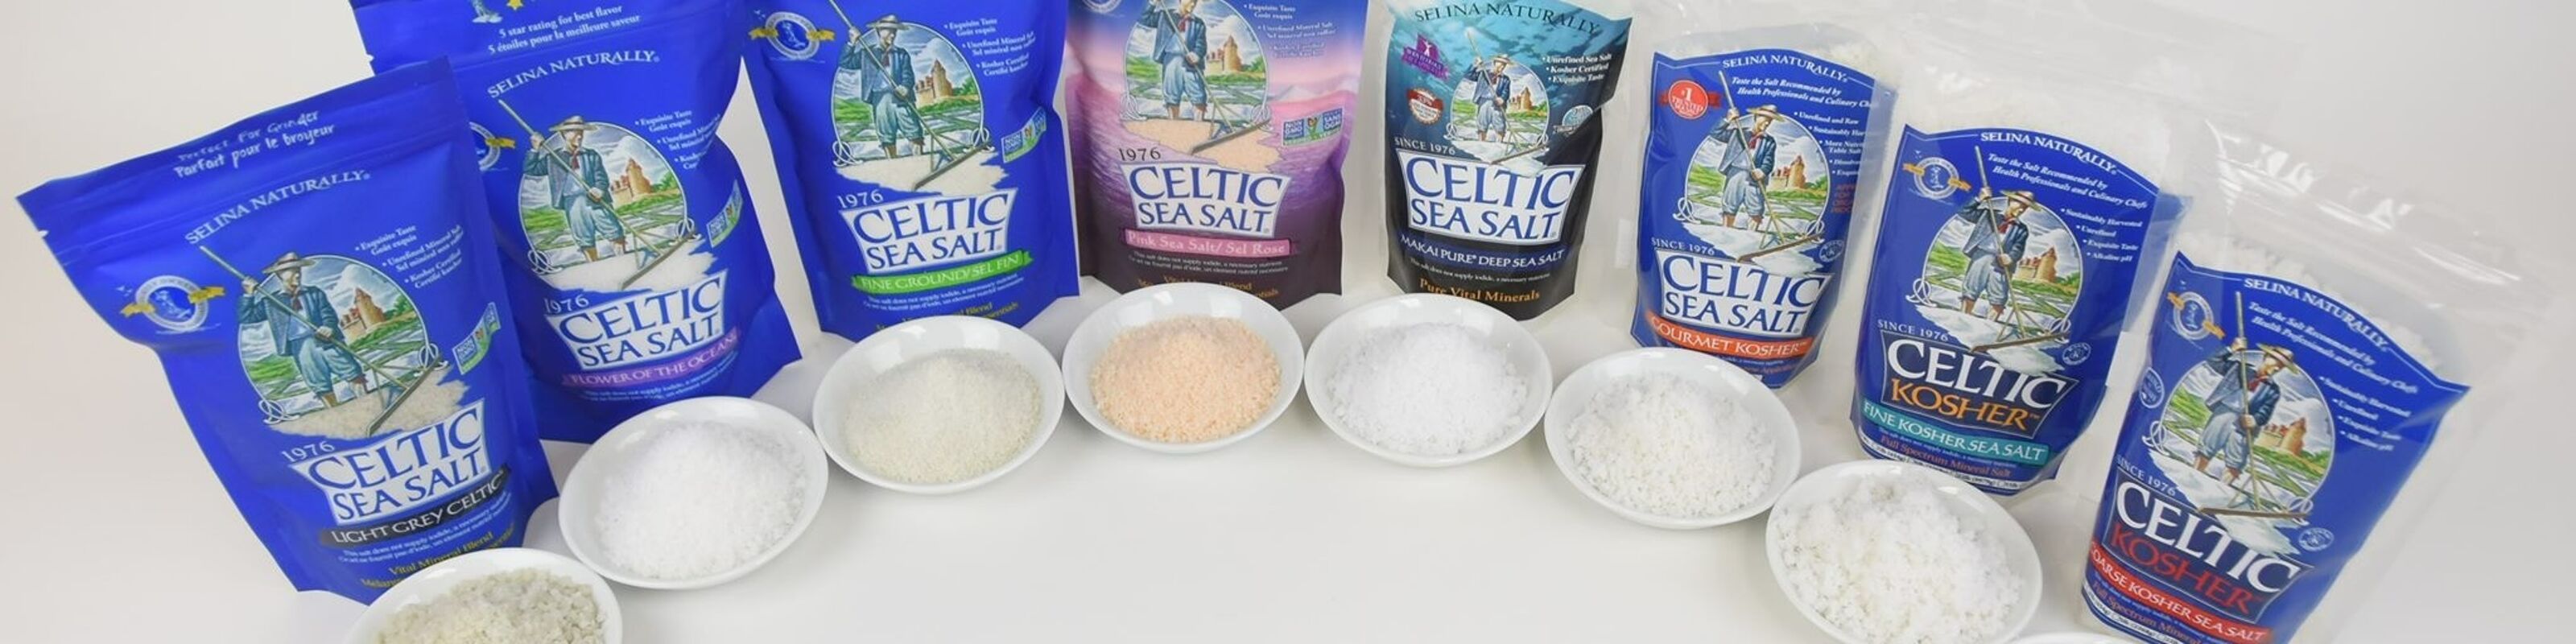 Achat produits Celtic Sea Salt en gros sur Ankorstore